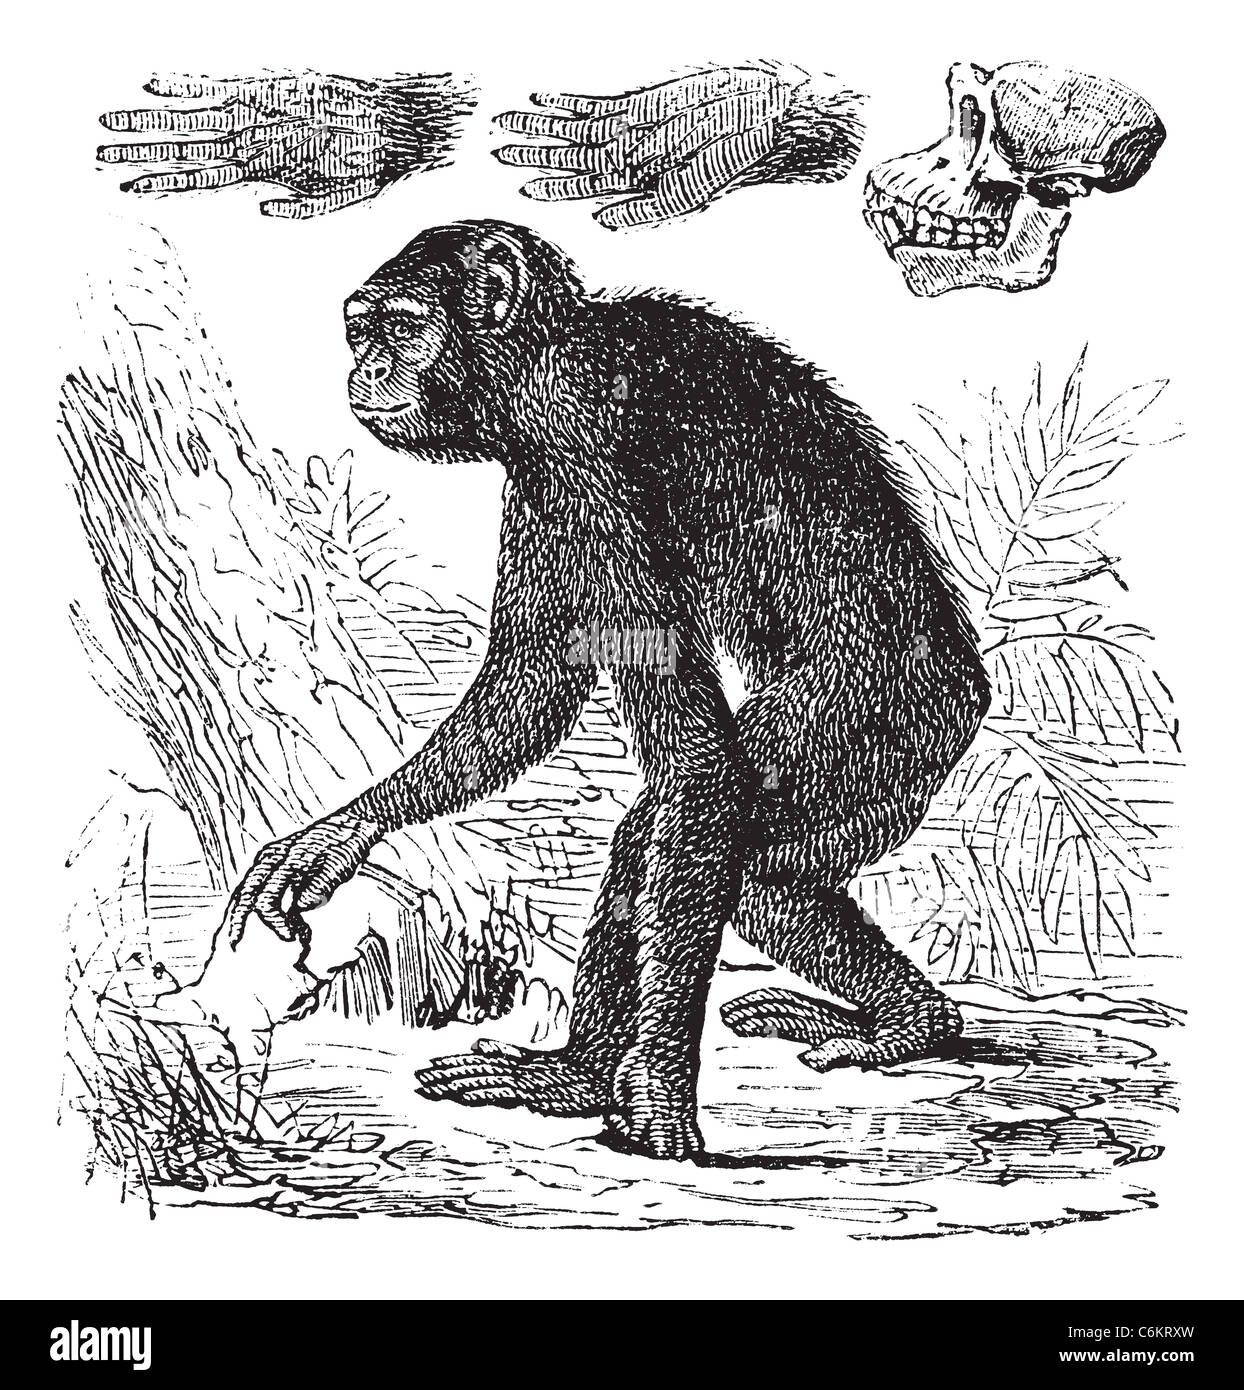 Ou chimpanzé Pan troglodytes, gravure d'époque. Vieille illustration gravée d'un chimpanzé. Banque D'Images